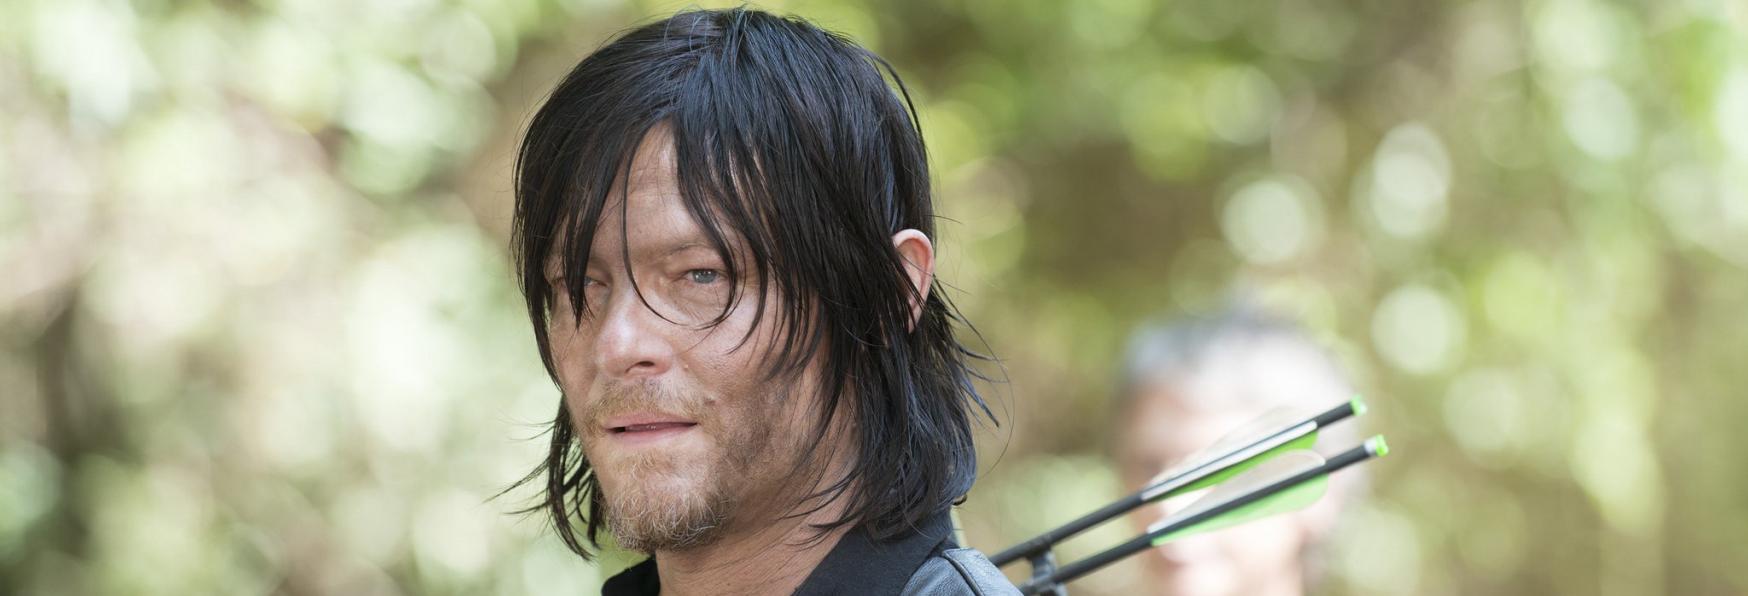 The Walking Dead: Nuove Anticipazioni sulla Serie TV Spin-off incentrata su Daryl